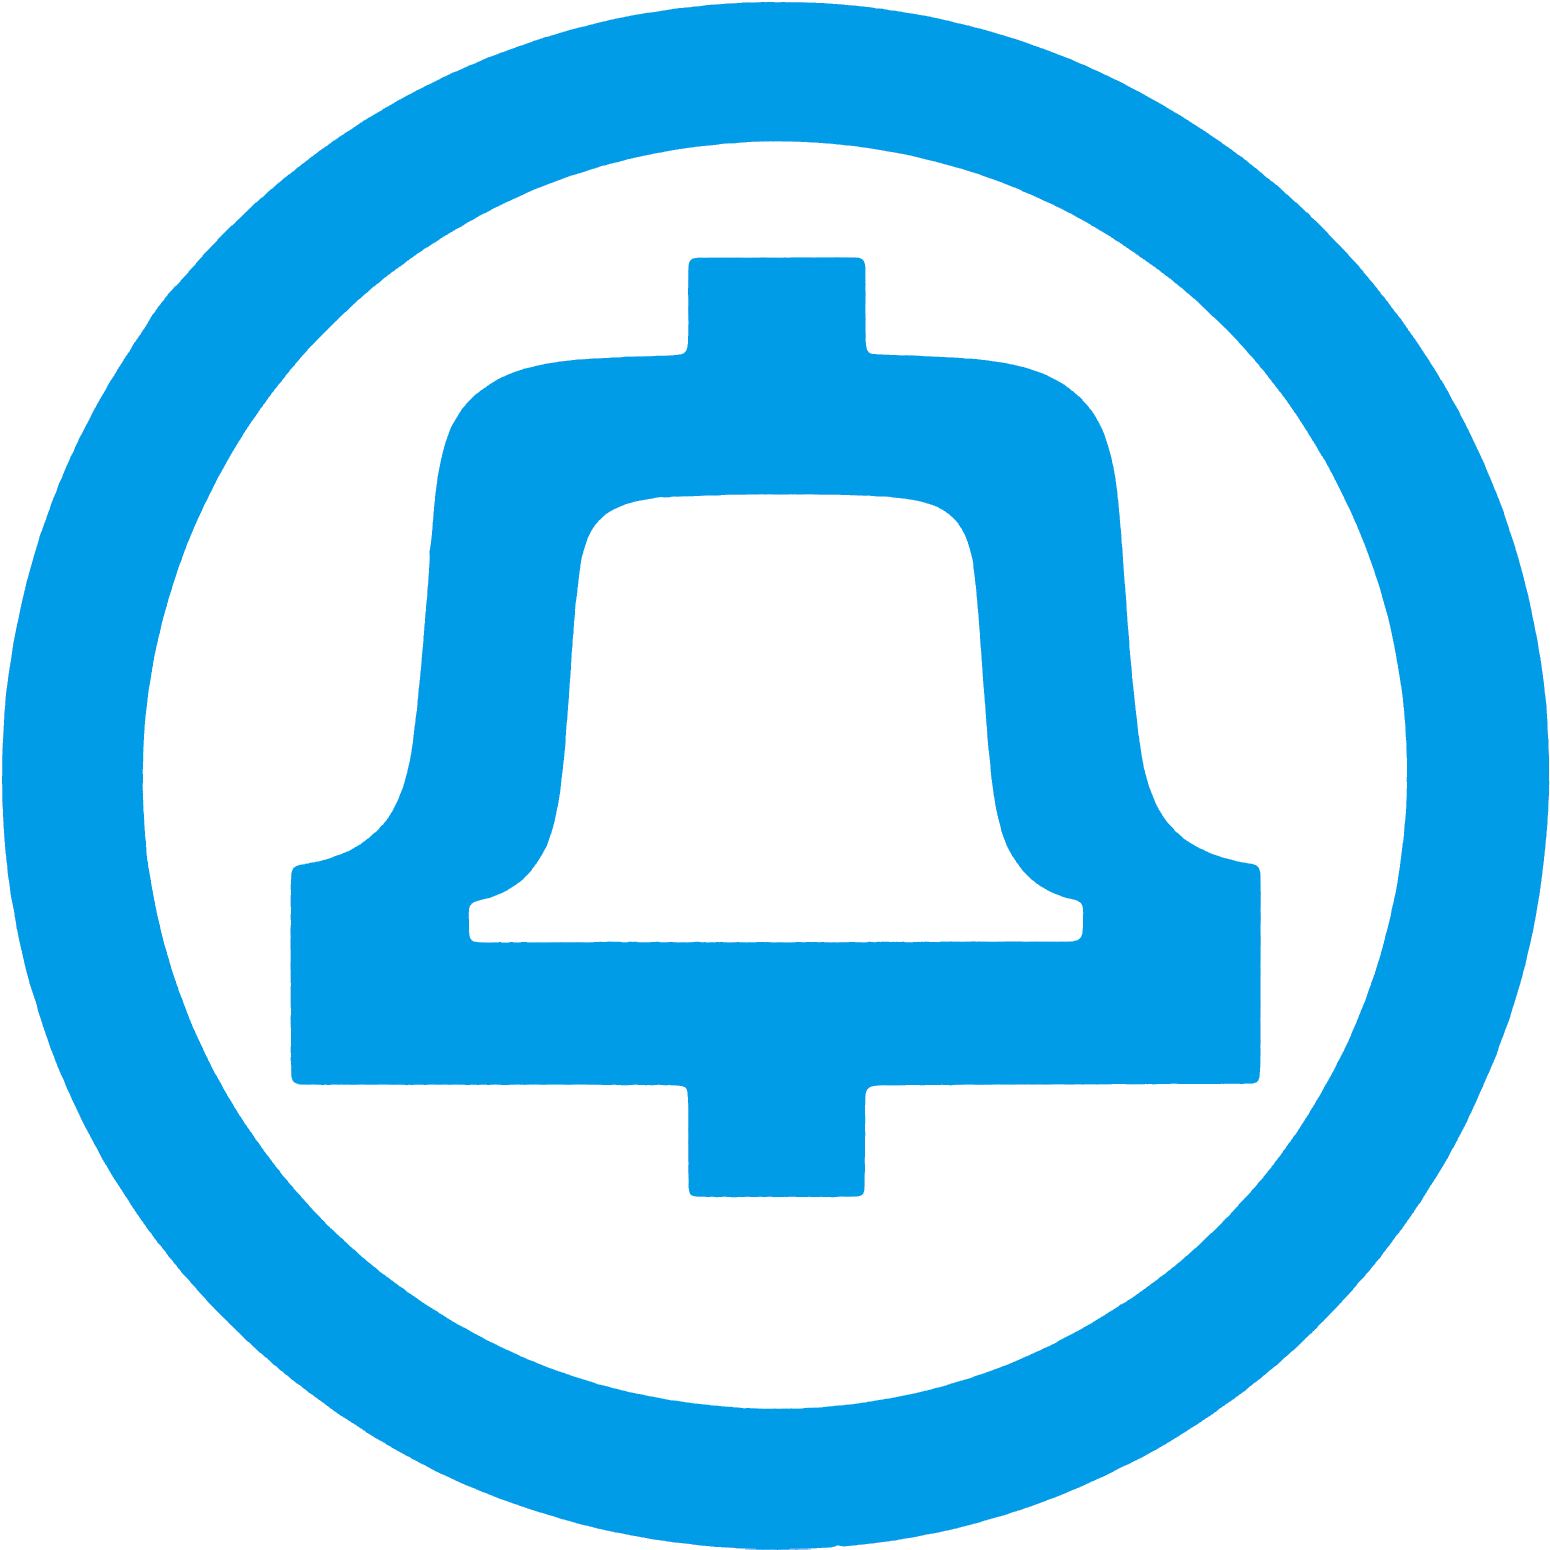 Bell System Memorial- Bell Logo History